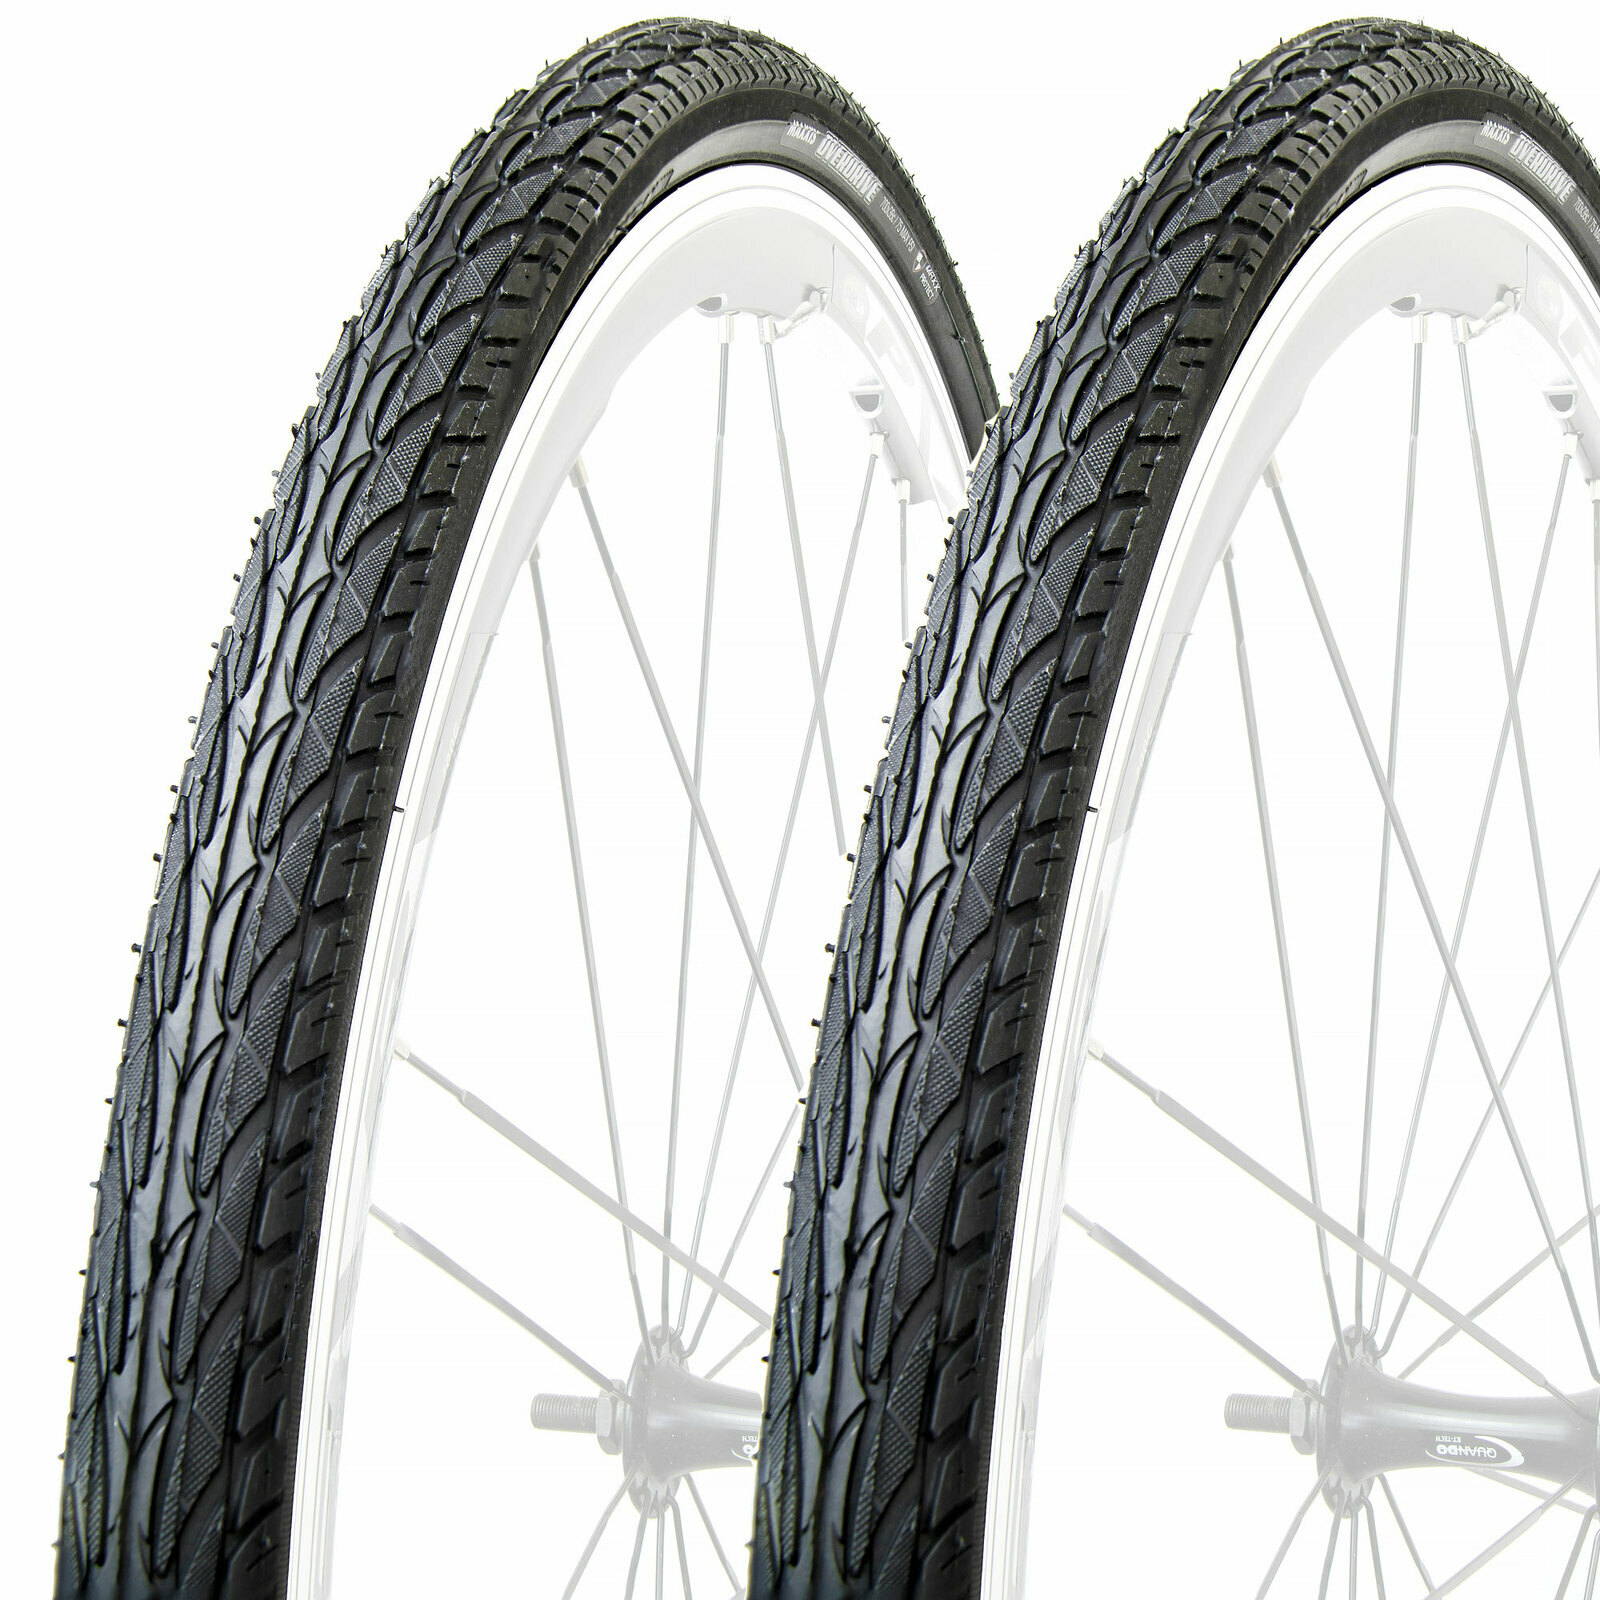 700x38 bike tire